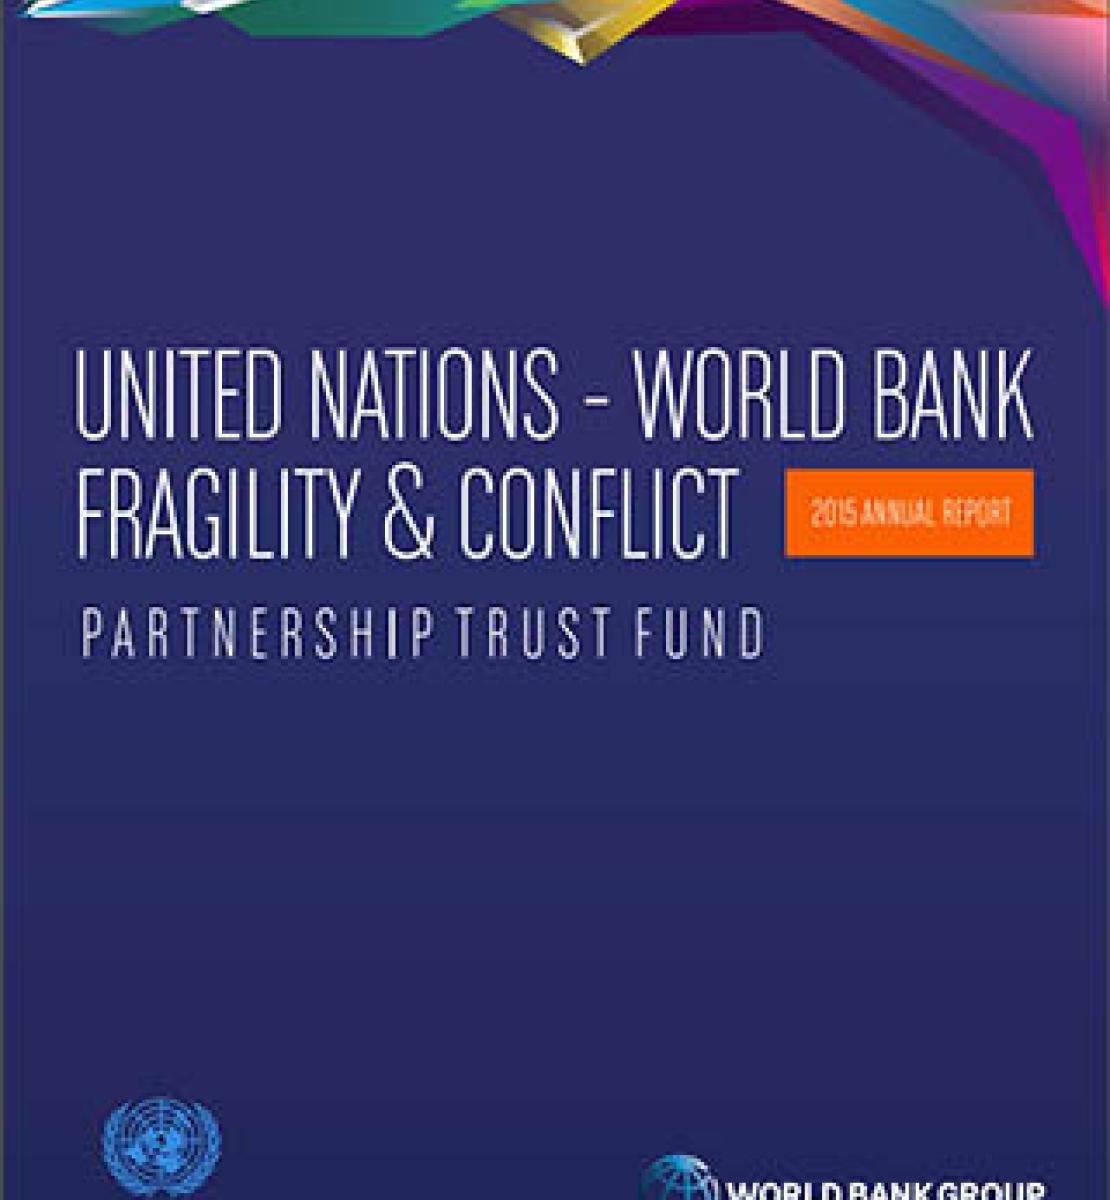 Fonds d'affectation spéciale ONU-Banque mondiale en faveur des pays fragiles ou touchés par un conflit - Rapport annuel 2015